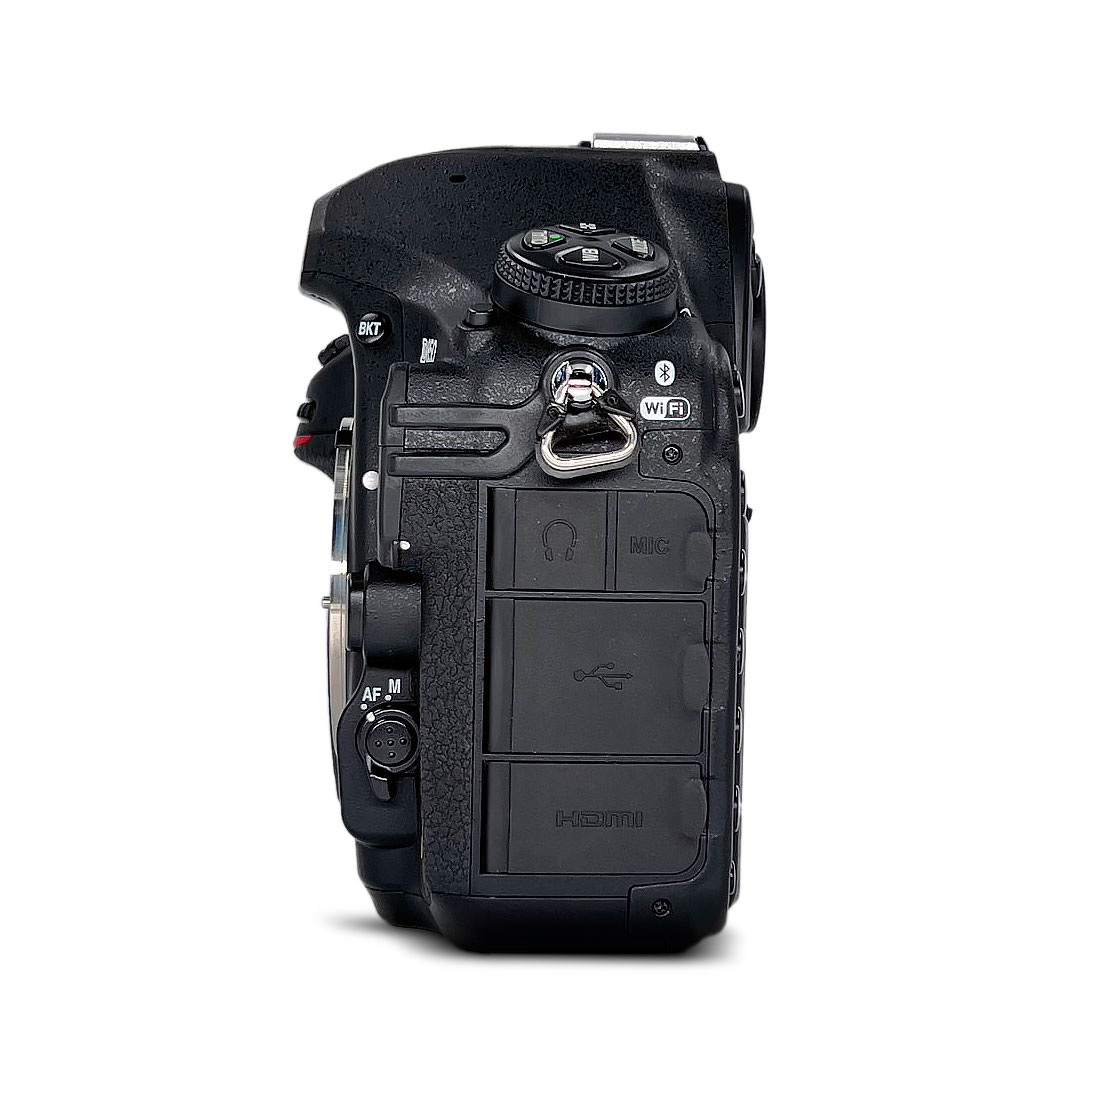 Nikon D850 DSLR Camera in Black (Body Only) - image 3 of 6